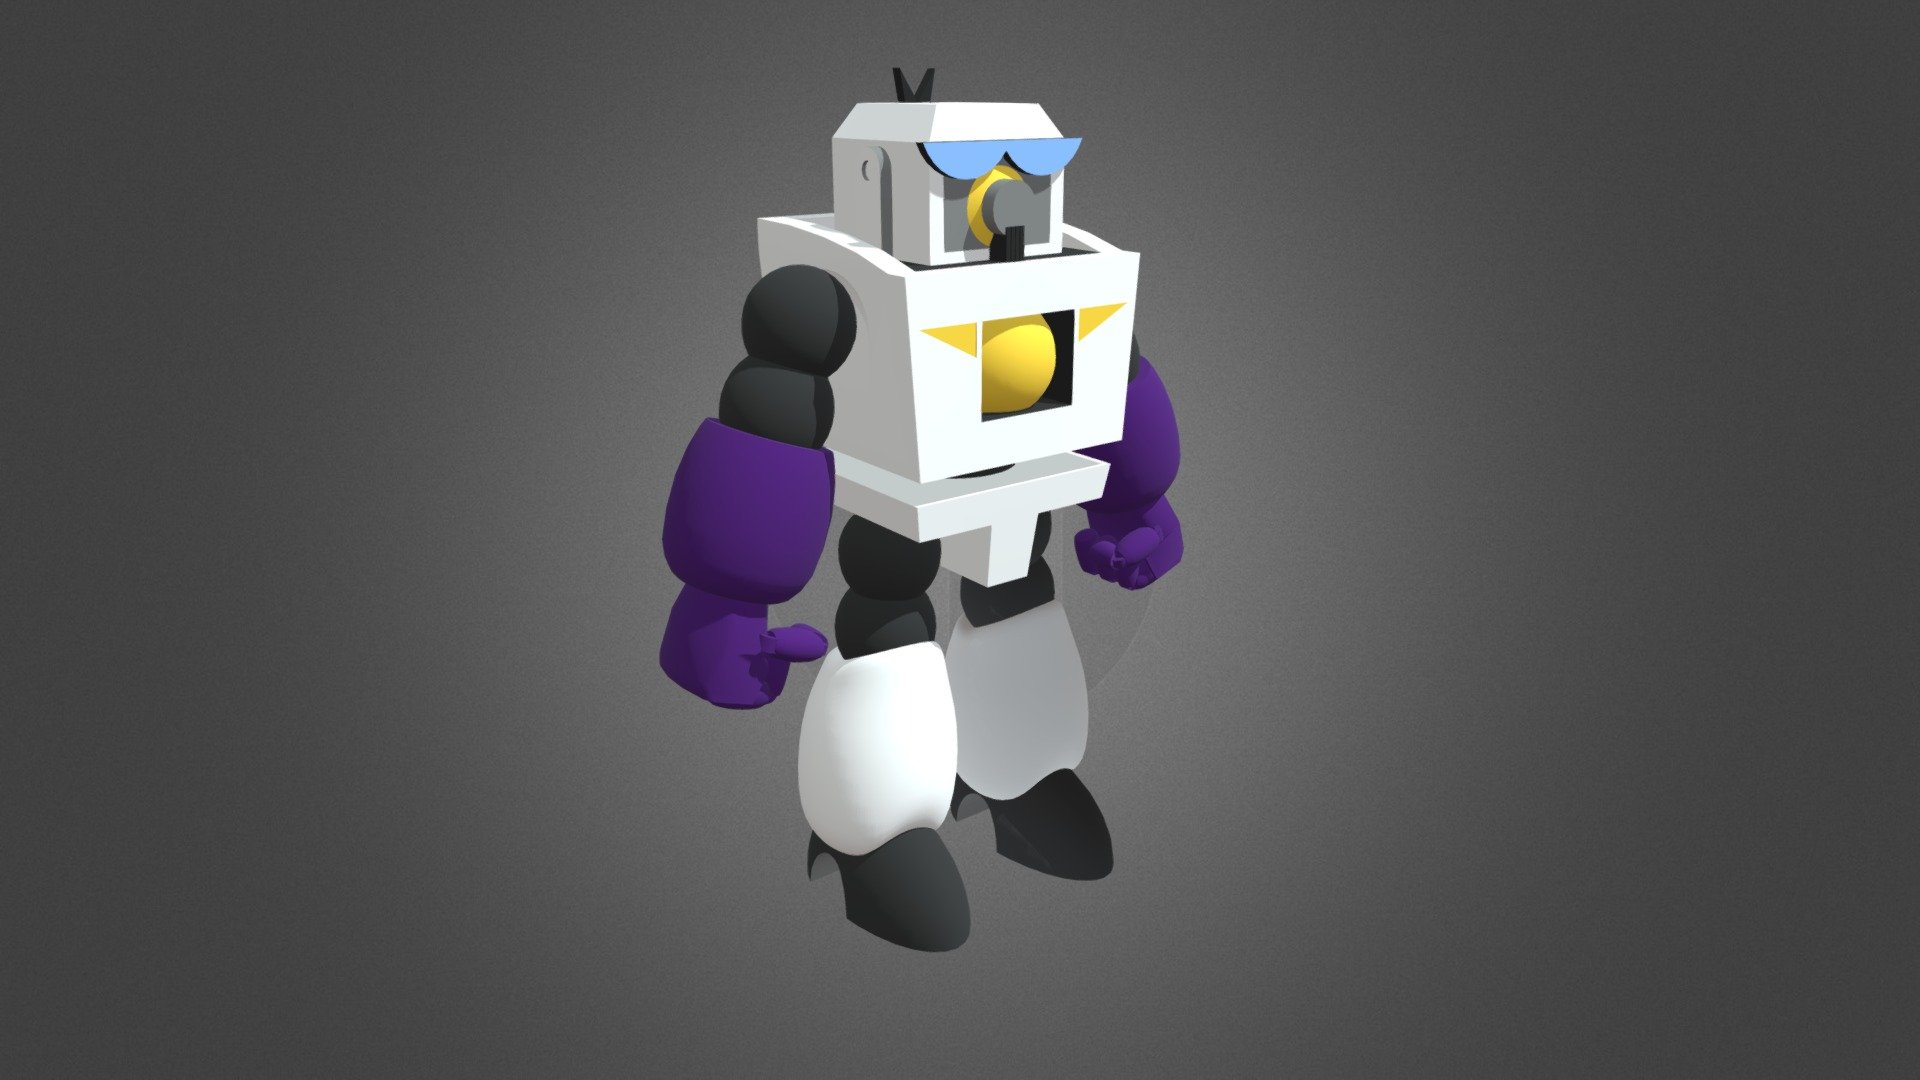 Robo Dexo 2000
From Cartoon Network's Dexter´s Laboratory - Robo Dexo 2000 - Download Free 3D model by DardilaC 3d model